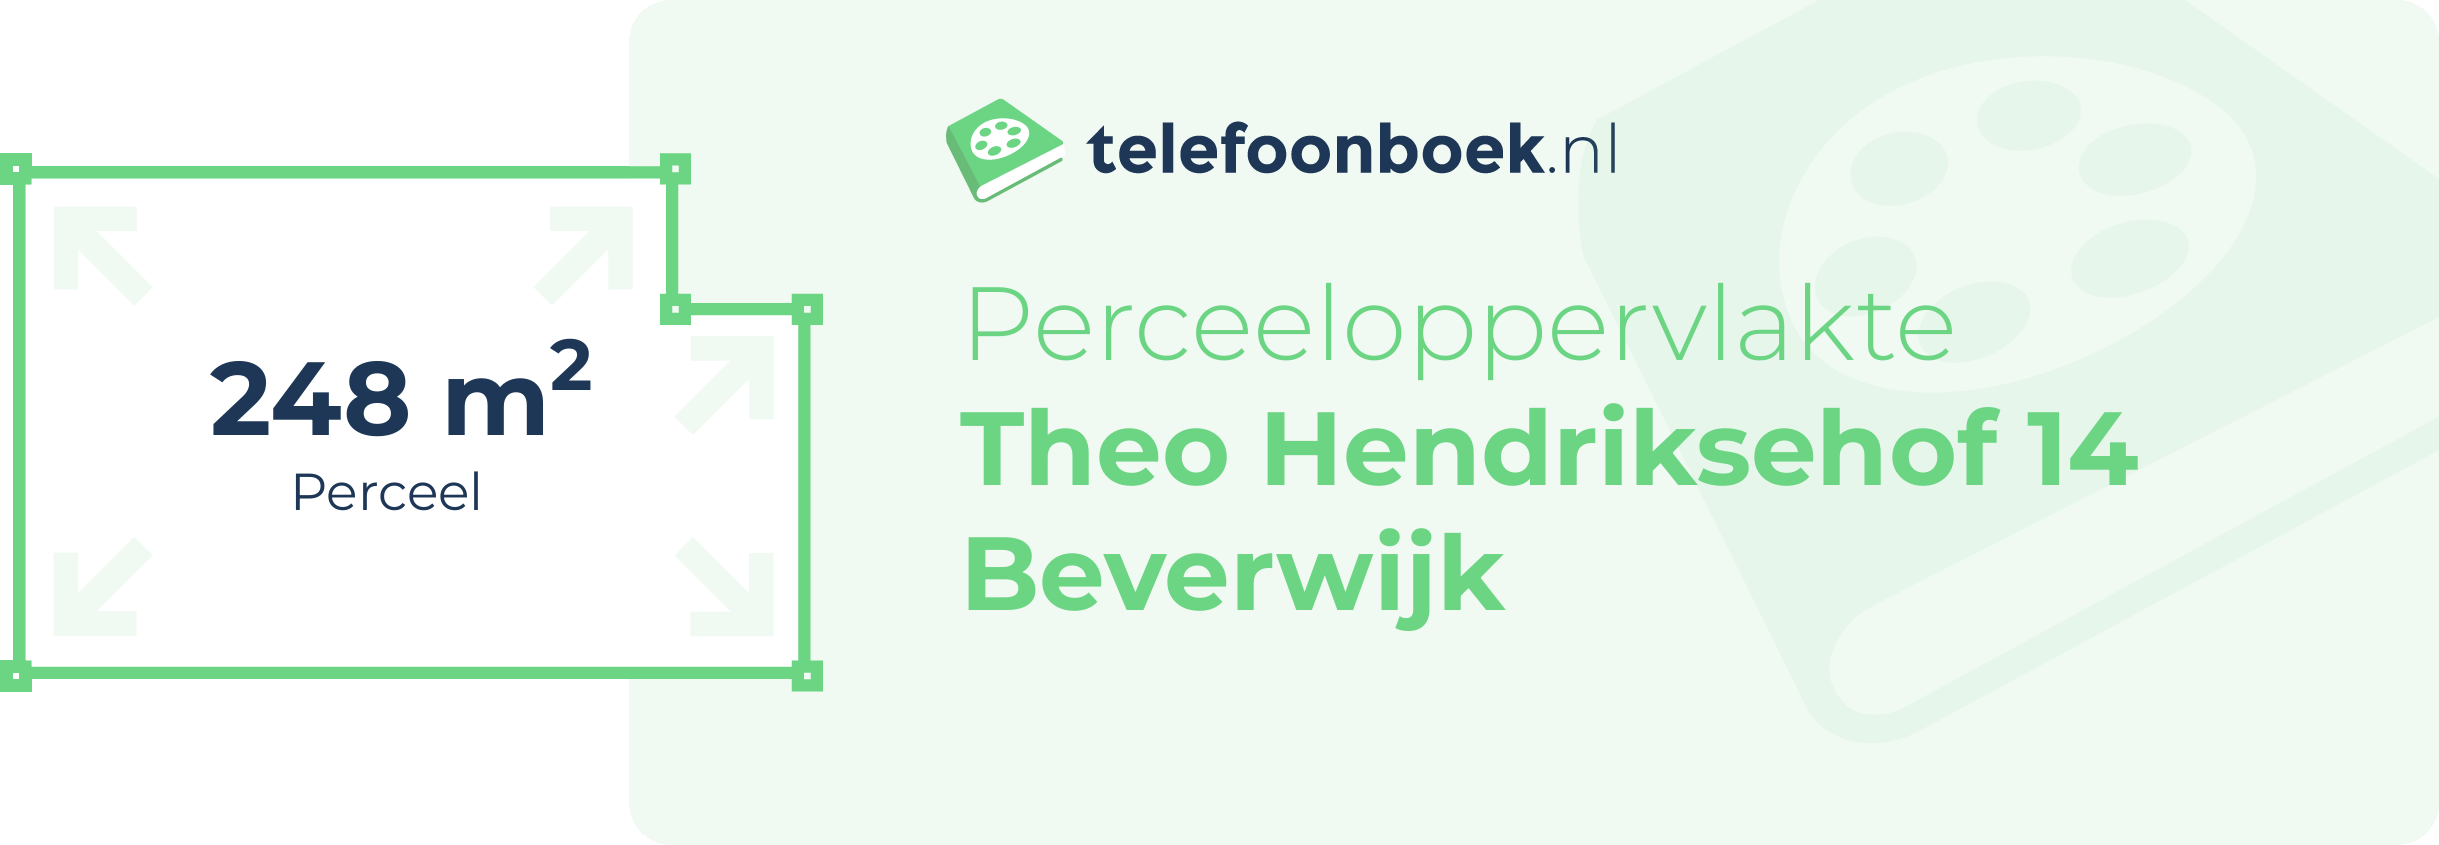 Perceeloppervlakte Theo Hendriksehof 14 Beverwijk